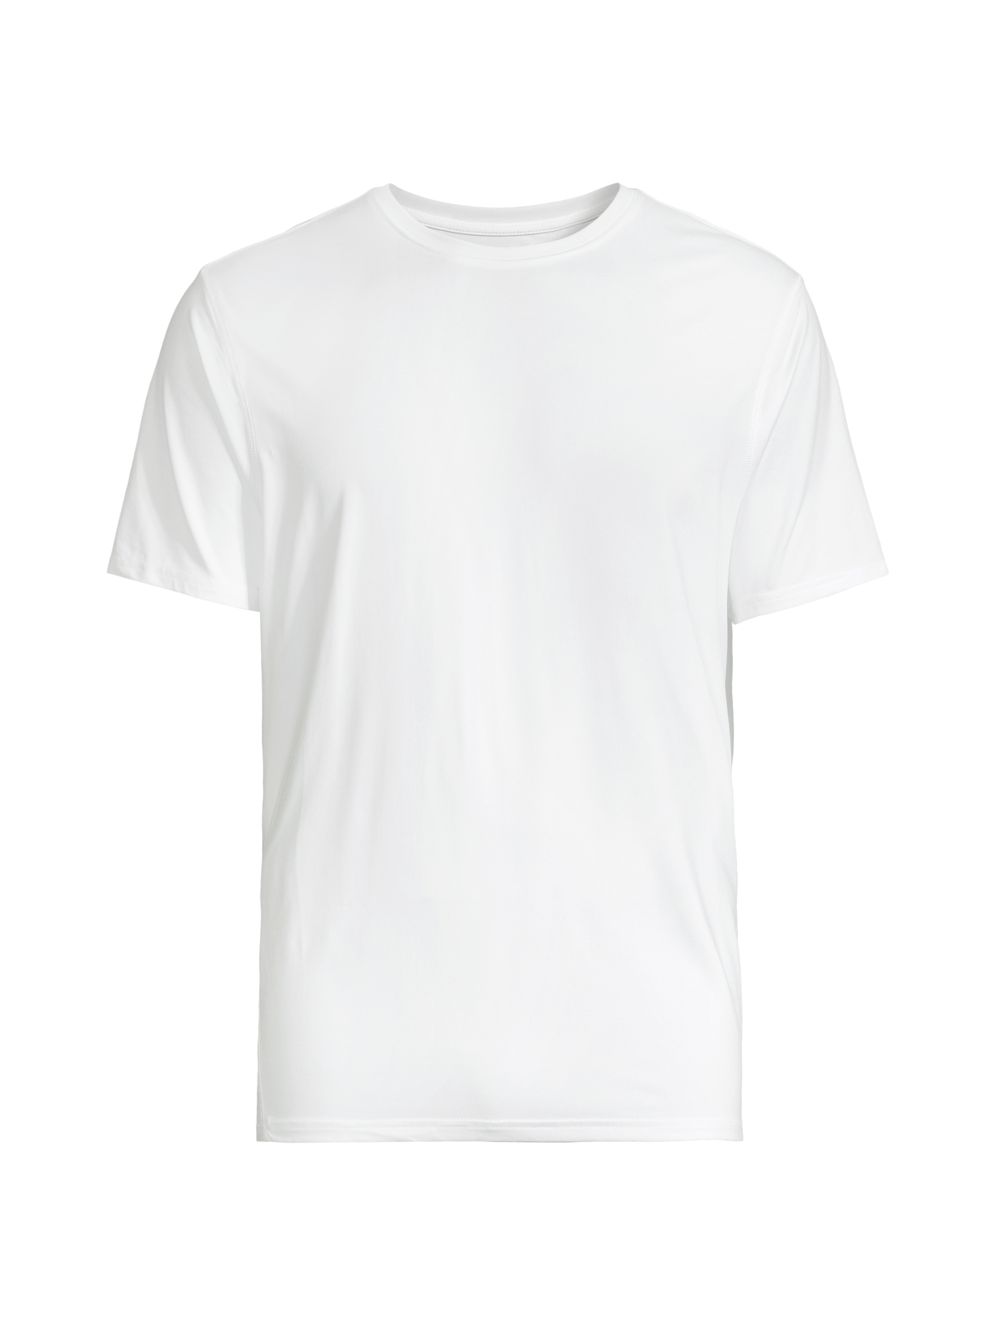 Спортивная футболка с круглым вырезом Guide Greyson